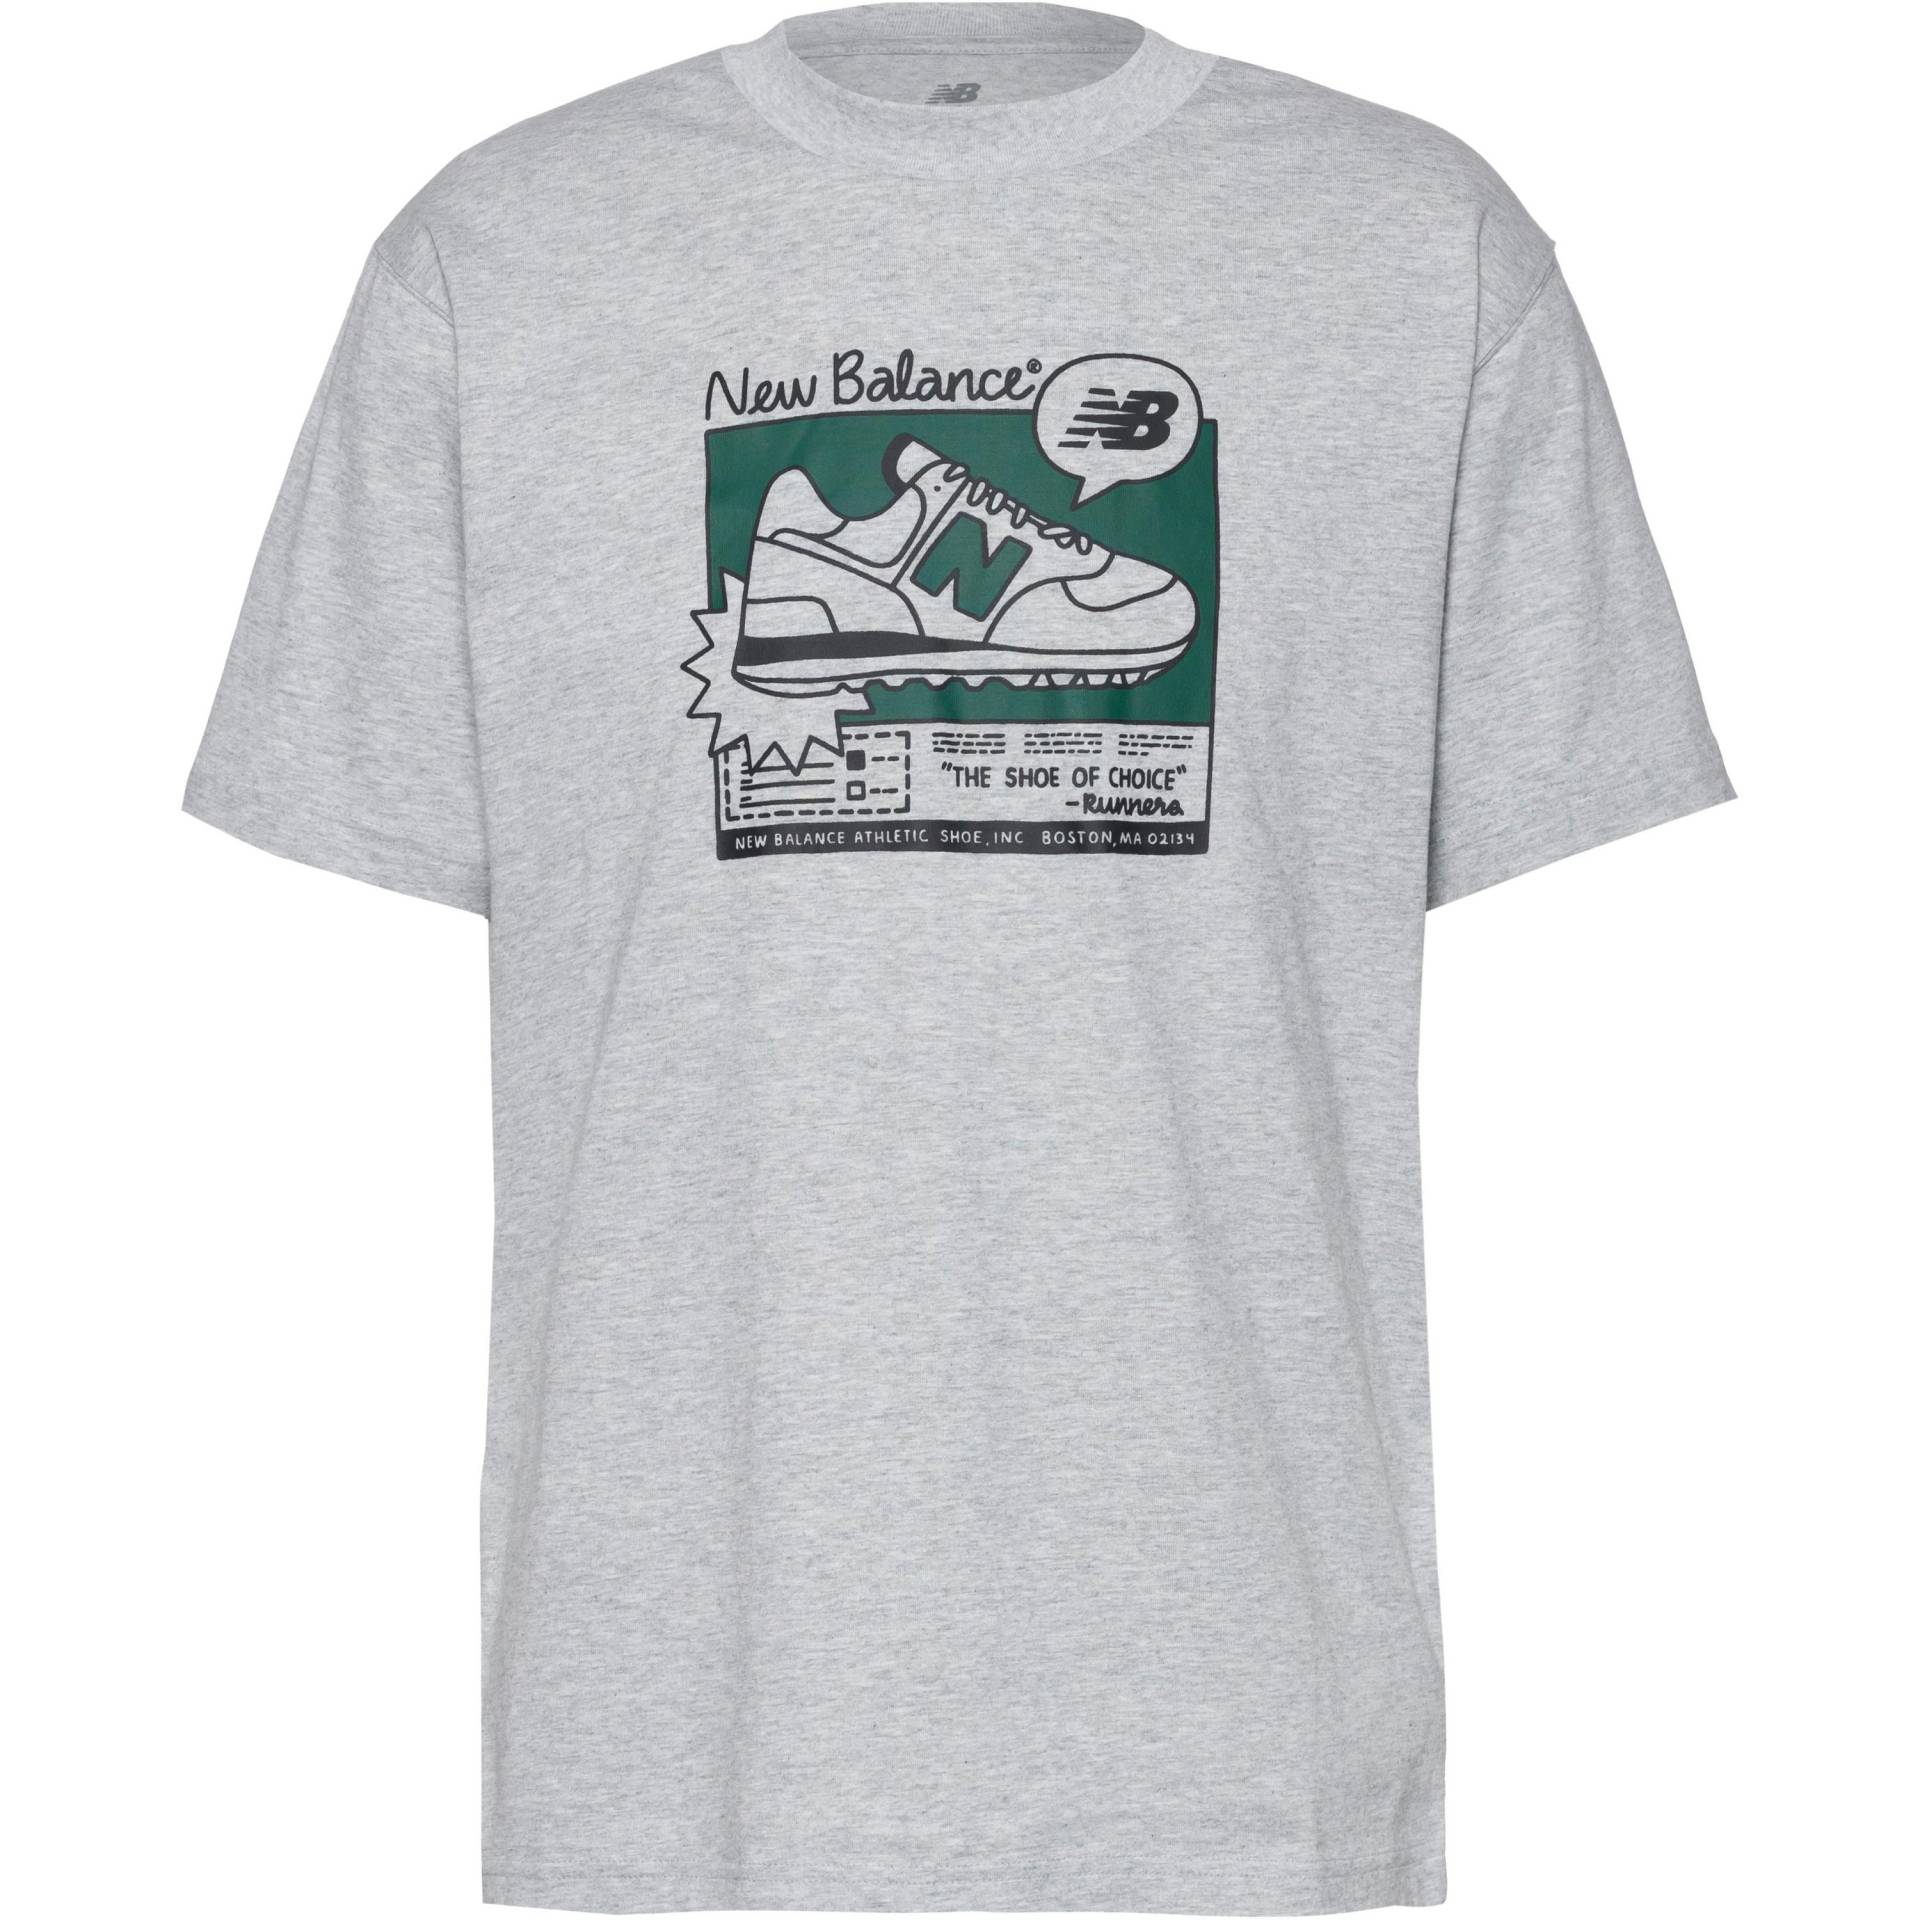 NEW BALANCE T-Shirt Herren von New Balance